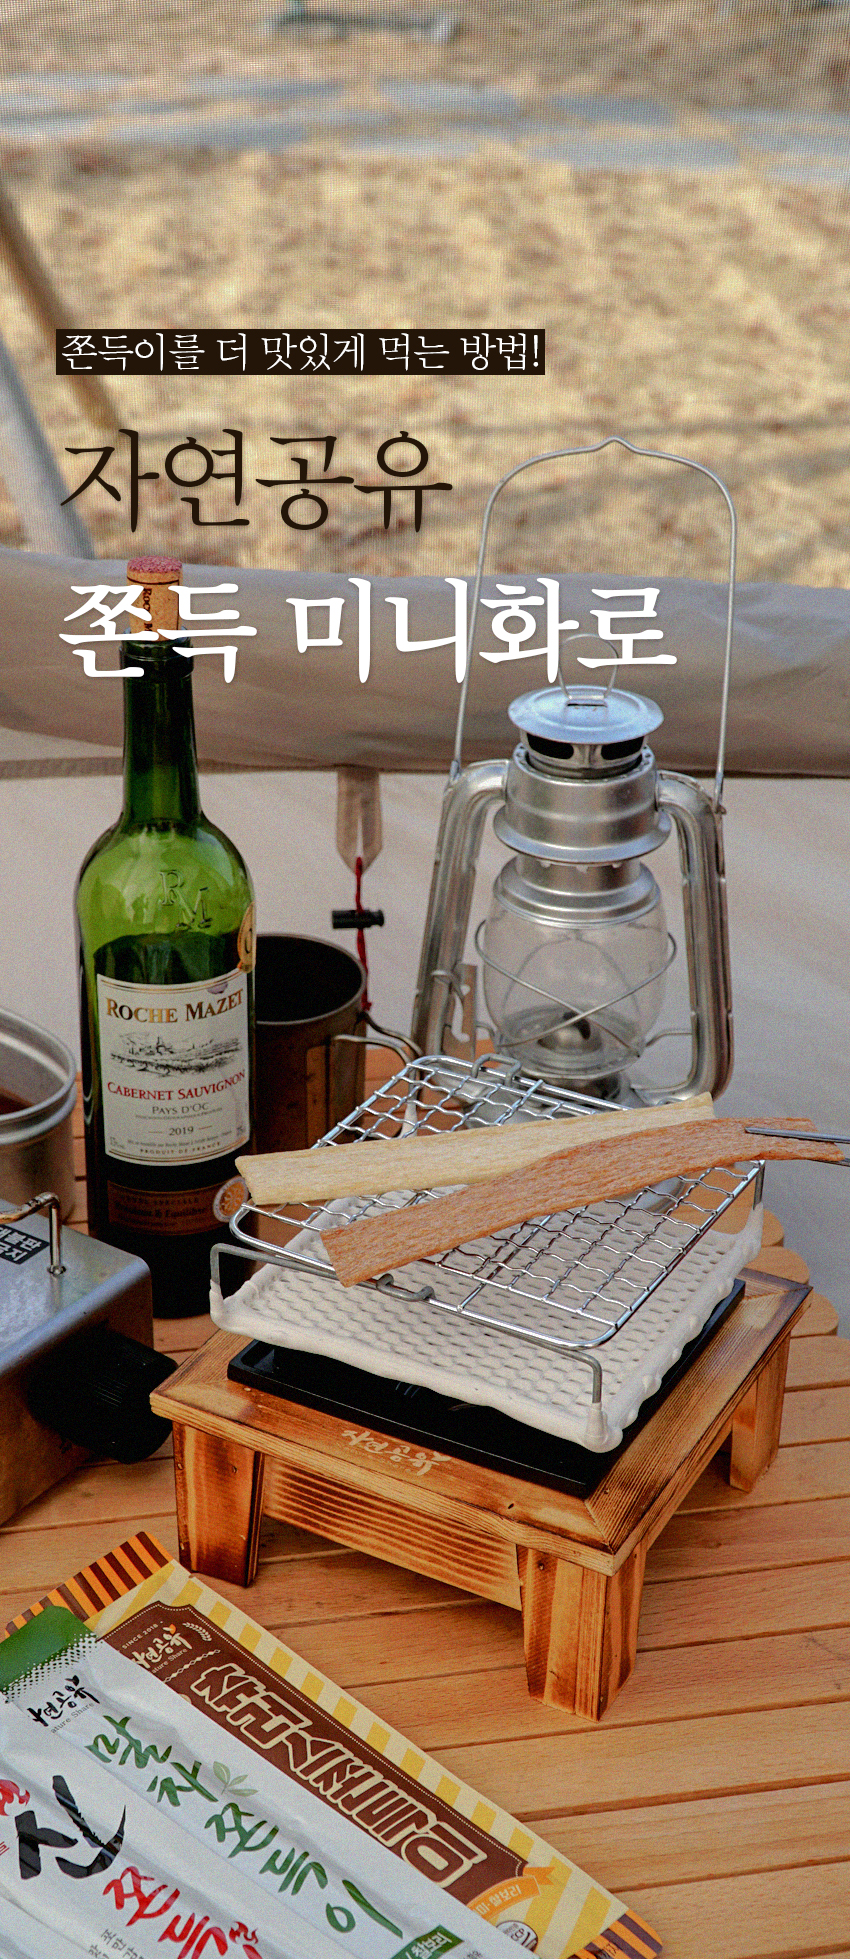 韓國食品-[자연공유] 쫀득미니화로